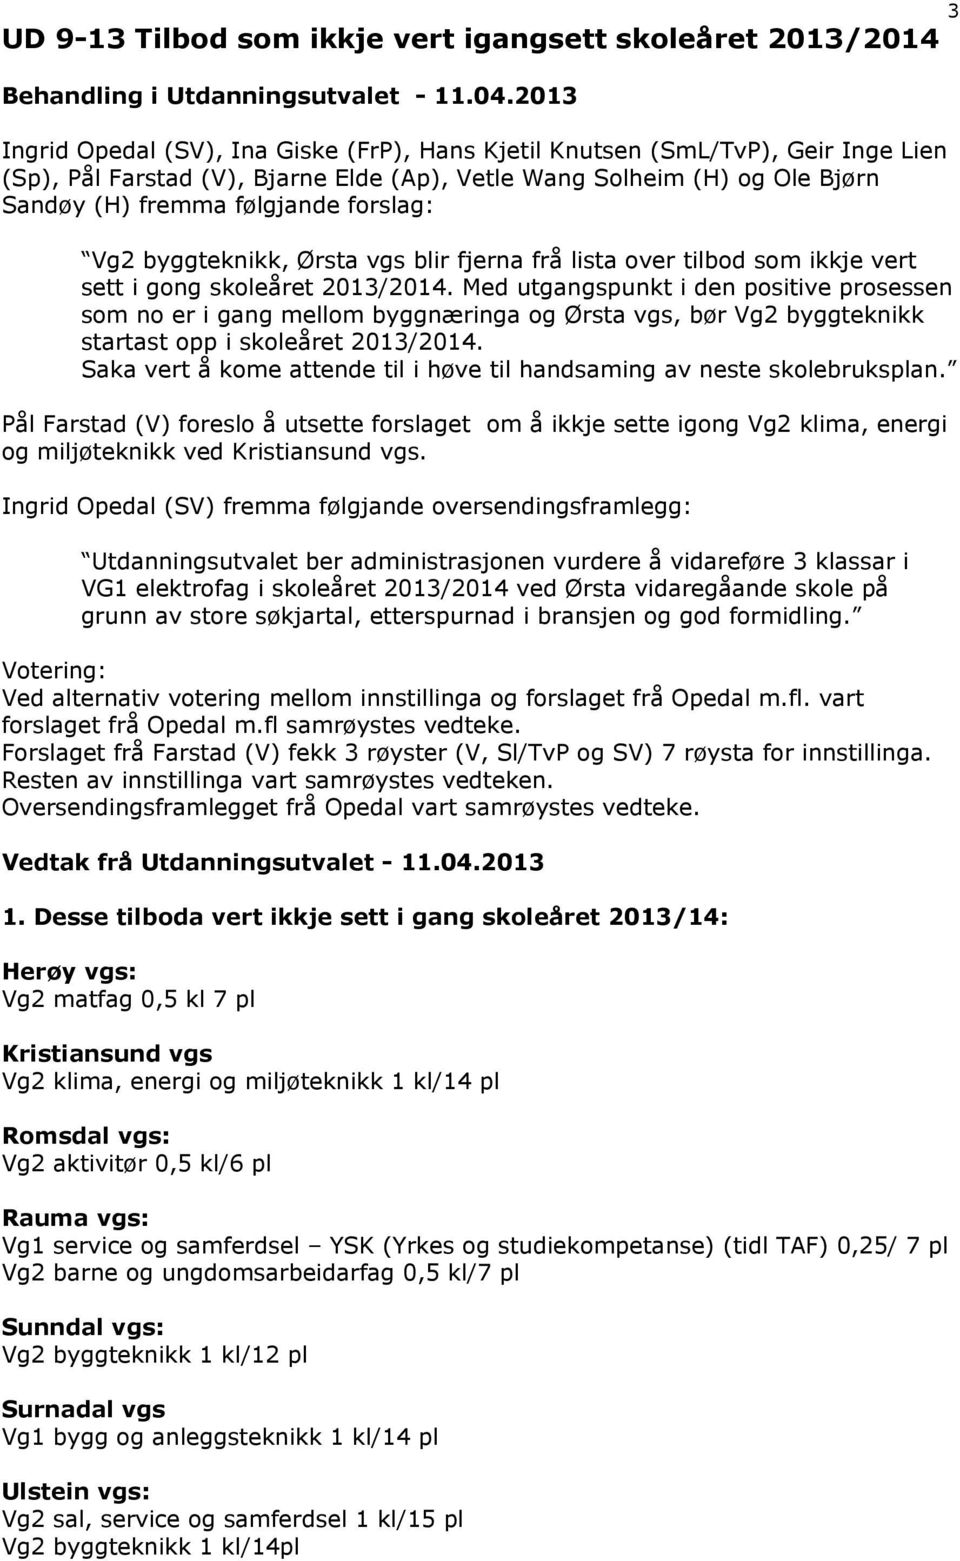 forslag: Vg2 byggteknikk, Ørsta vgs blir fjerna frå lista over tilbod som ikkje vert sett i gong skoleåret 2013/2014.